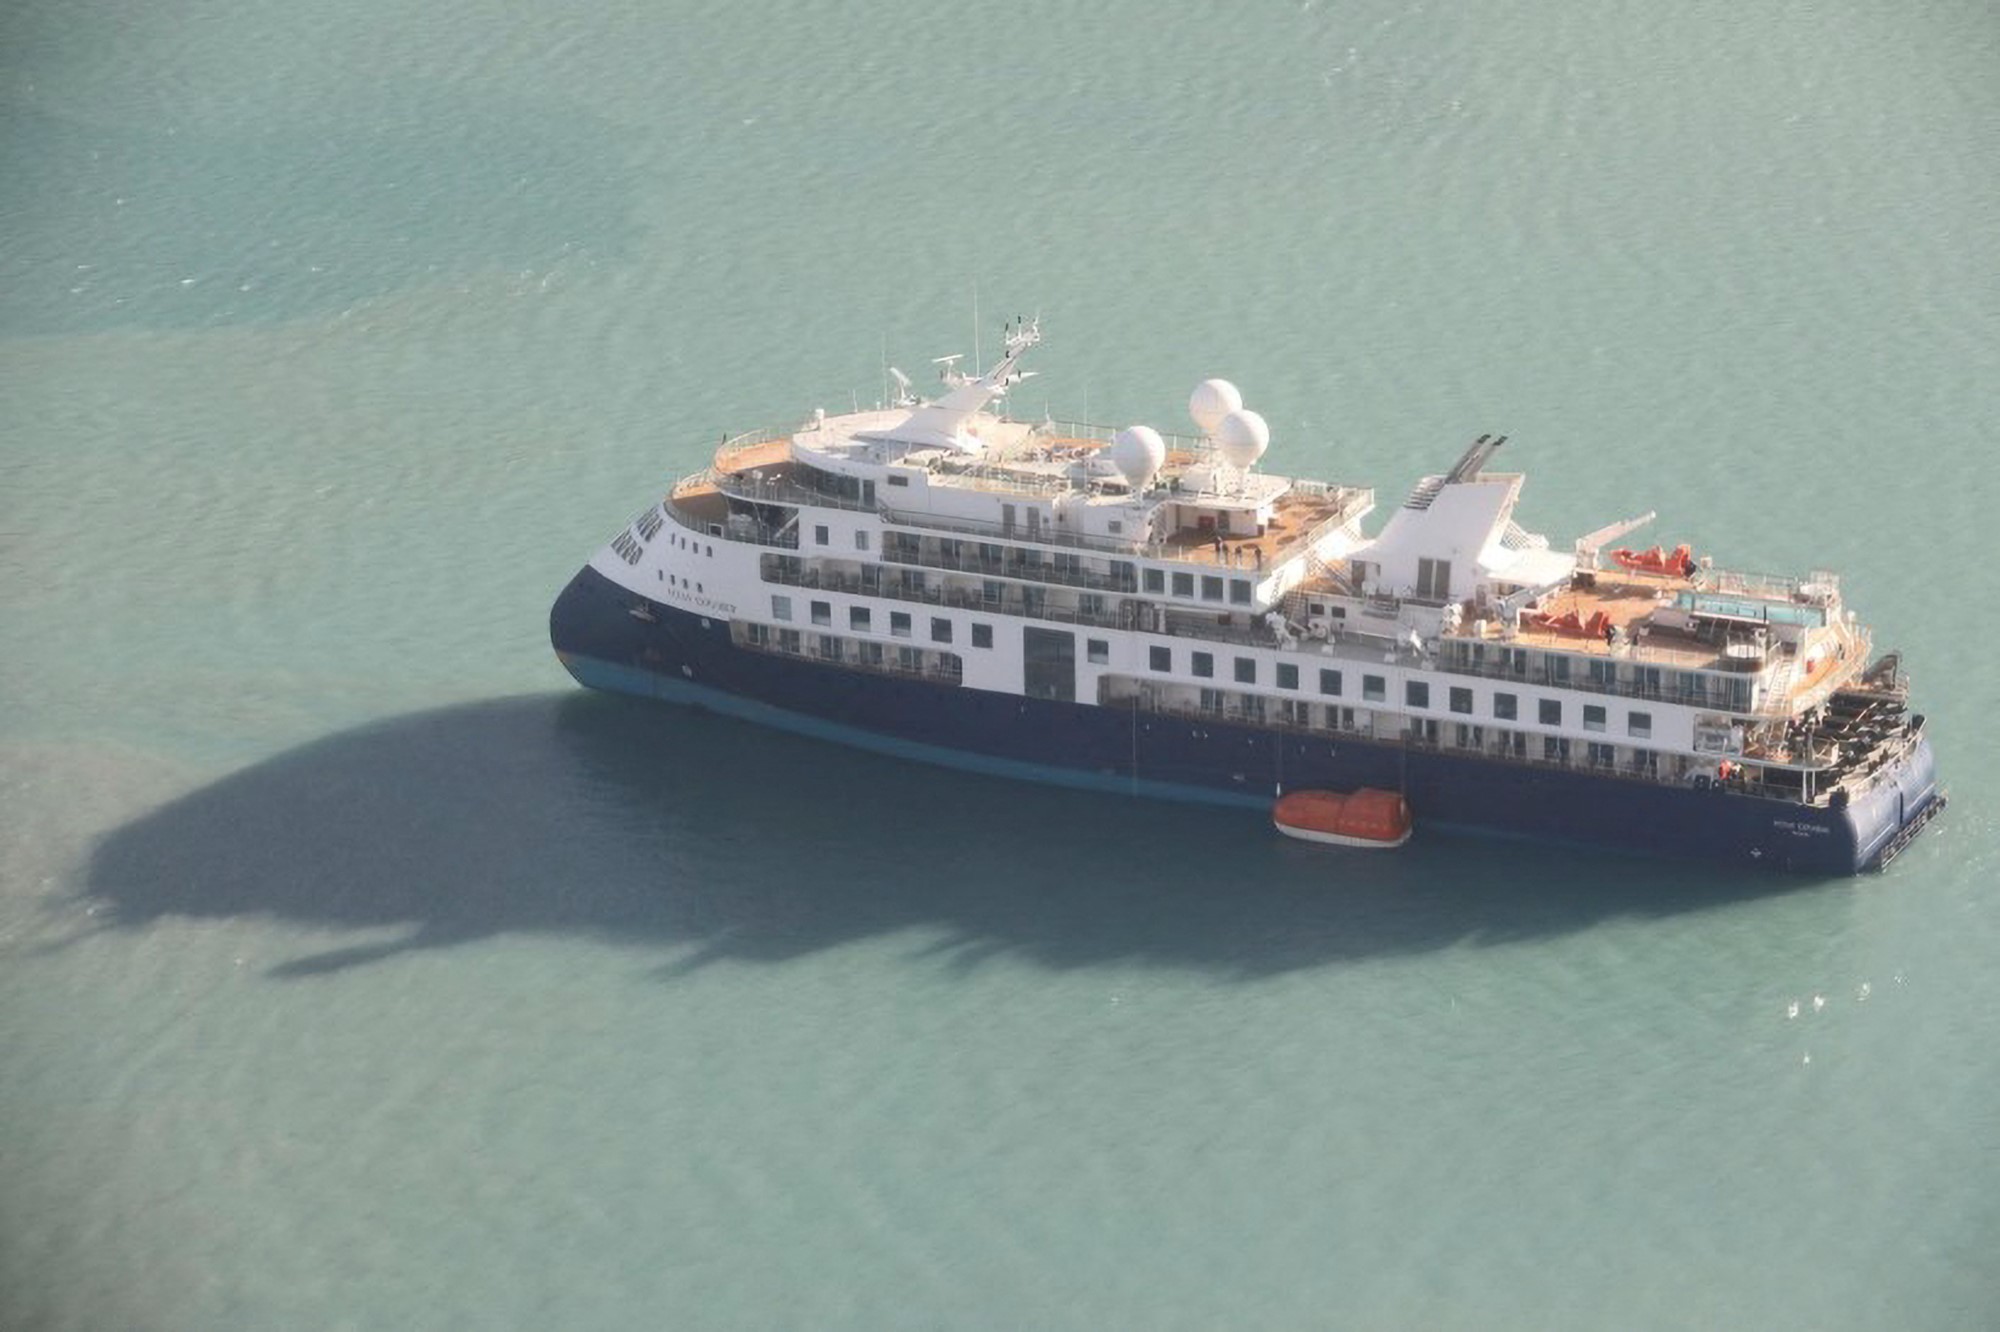 Cruise ship ran aground